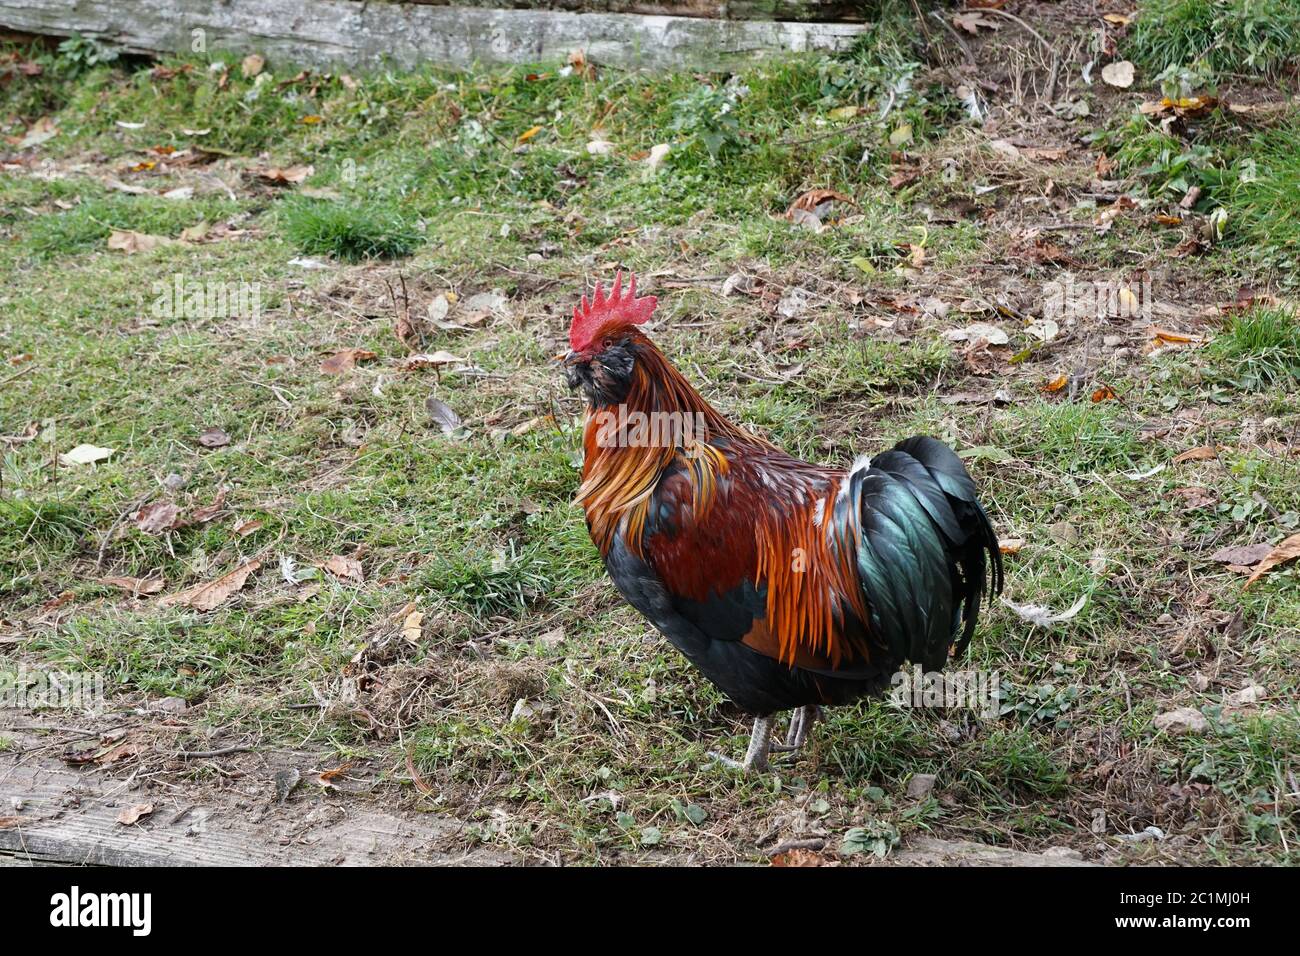 Magnifique rooster à fonctionnement libre qui traverse l'herbe Banque D'Images